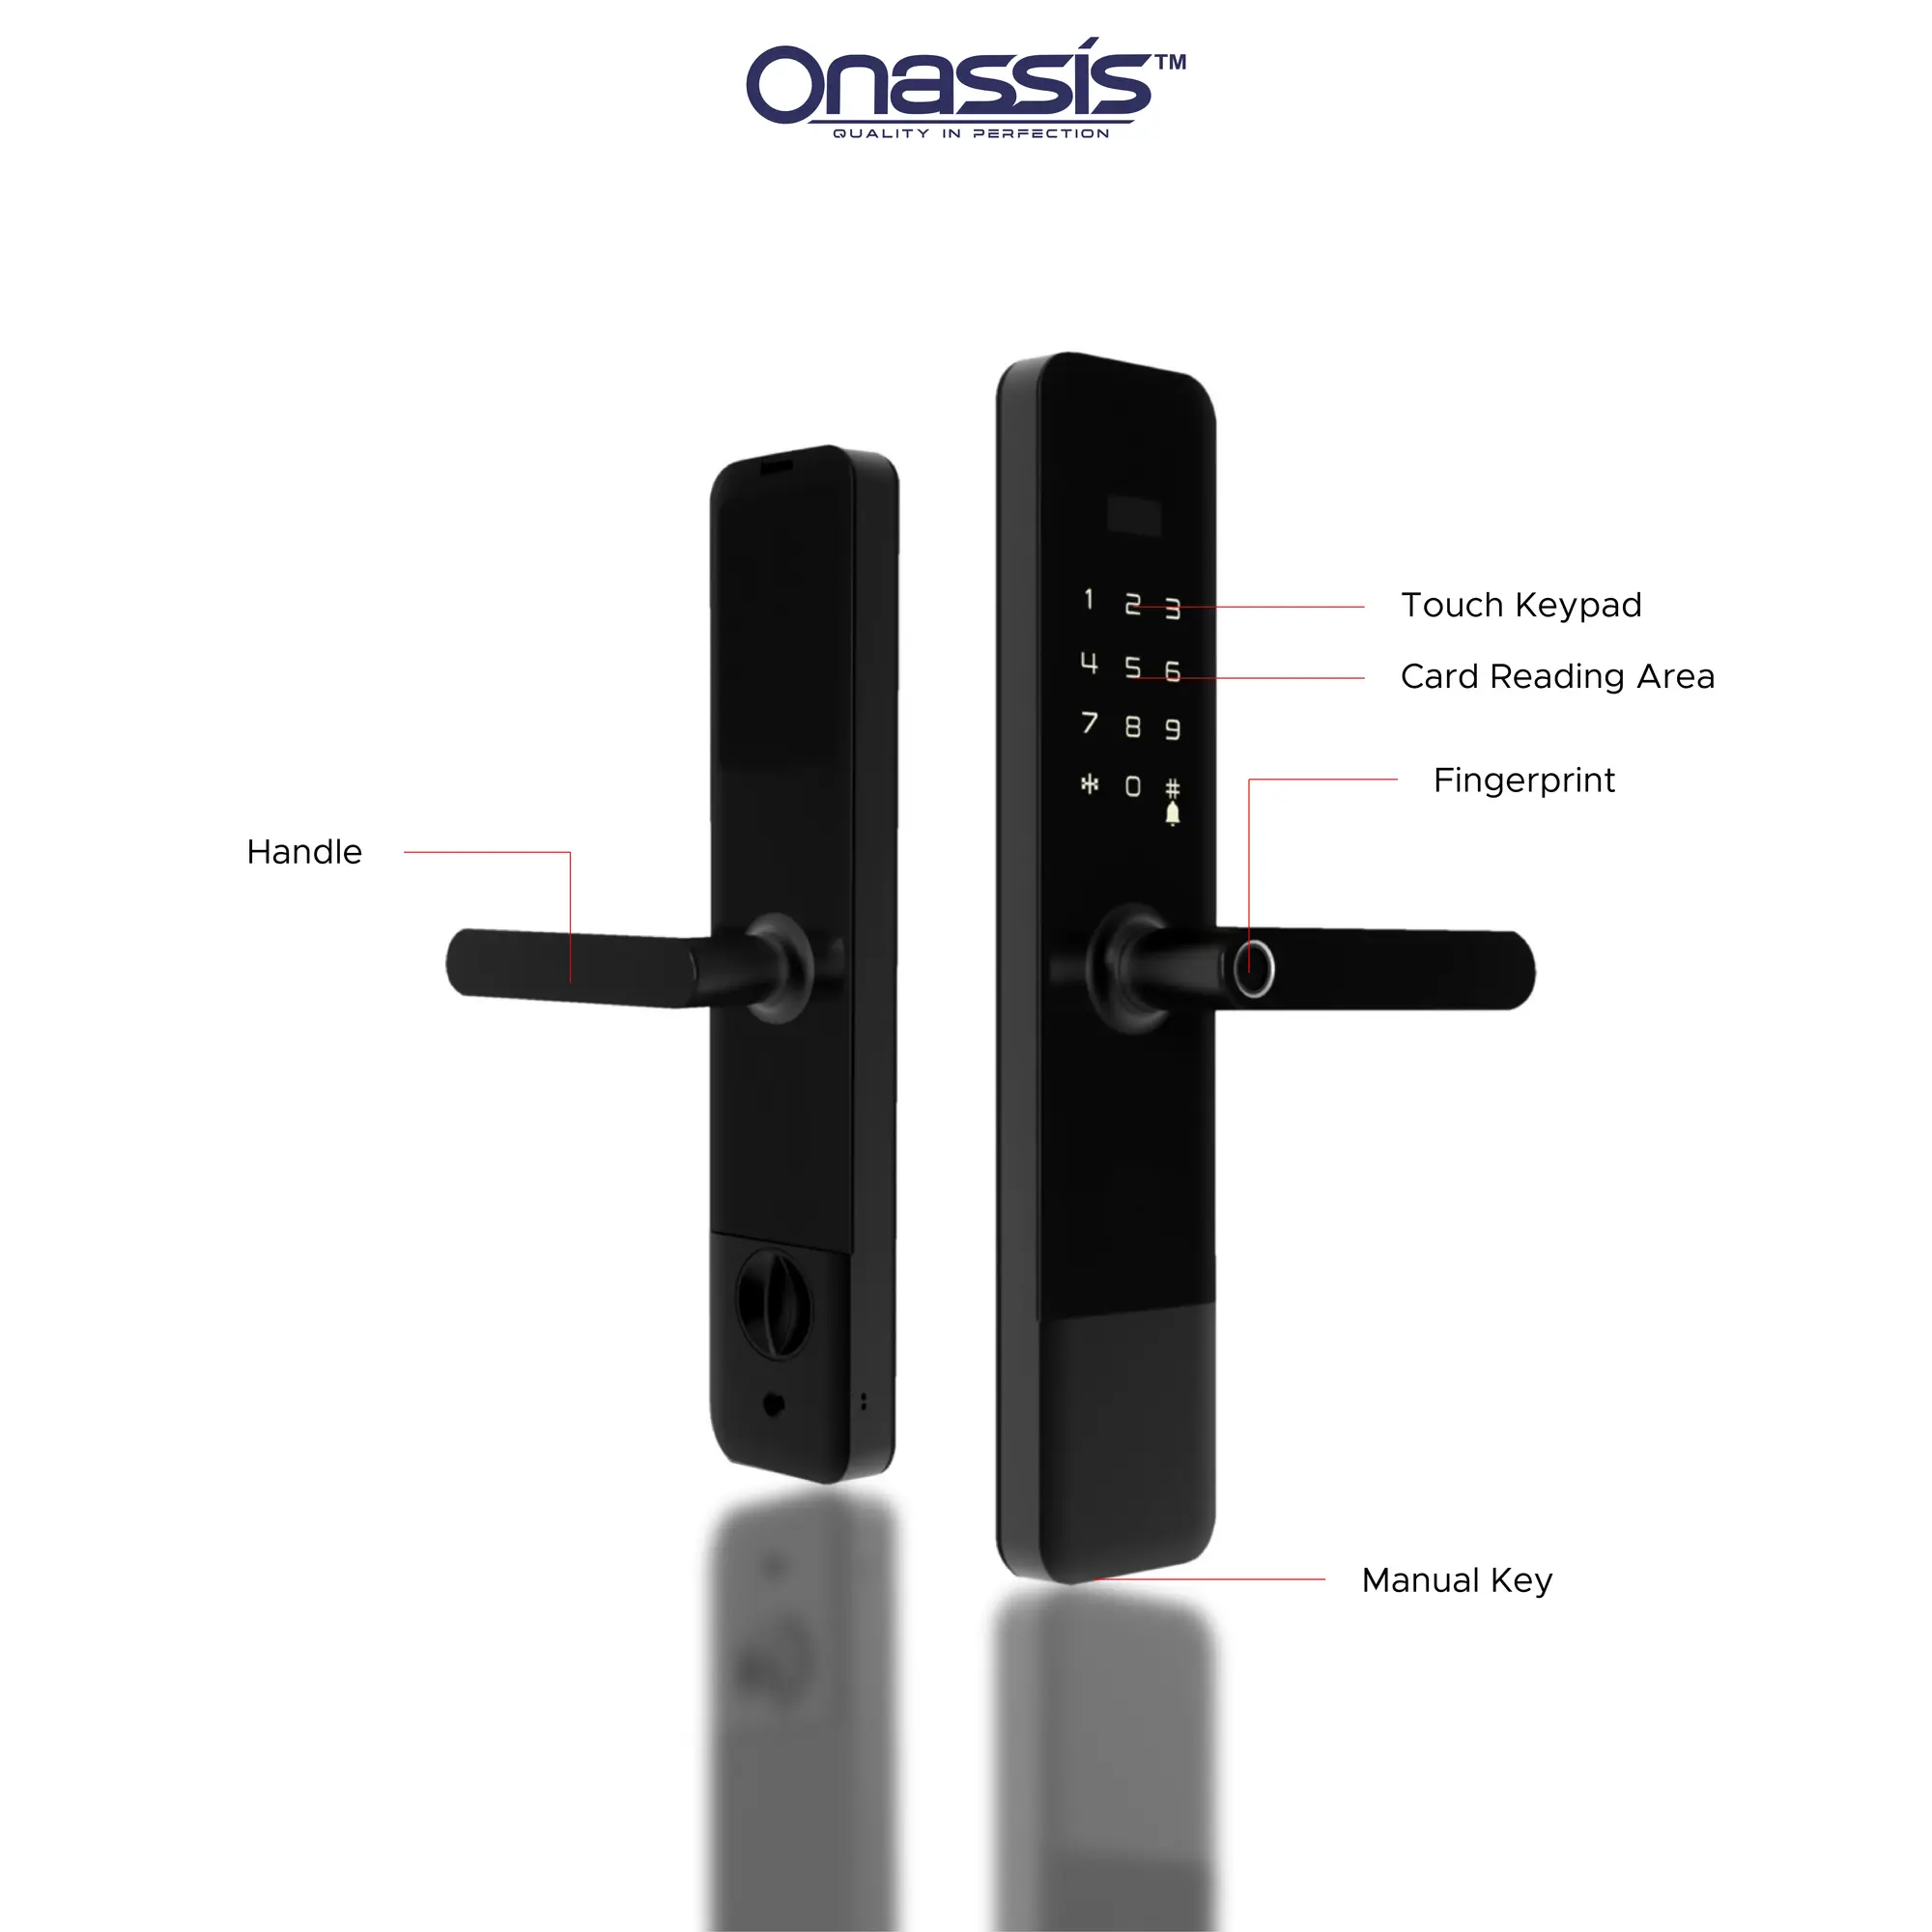 Smartlock Onassis T61 Pro Unlock Features